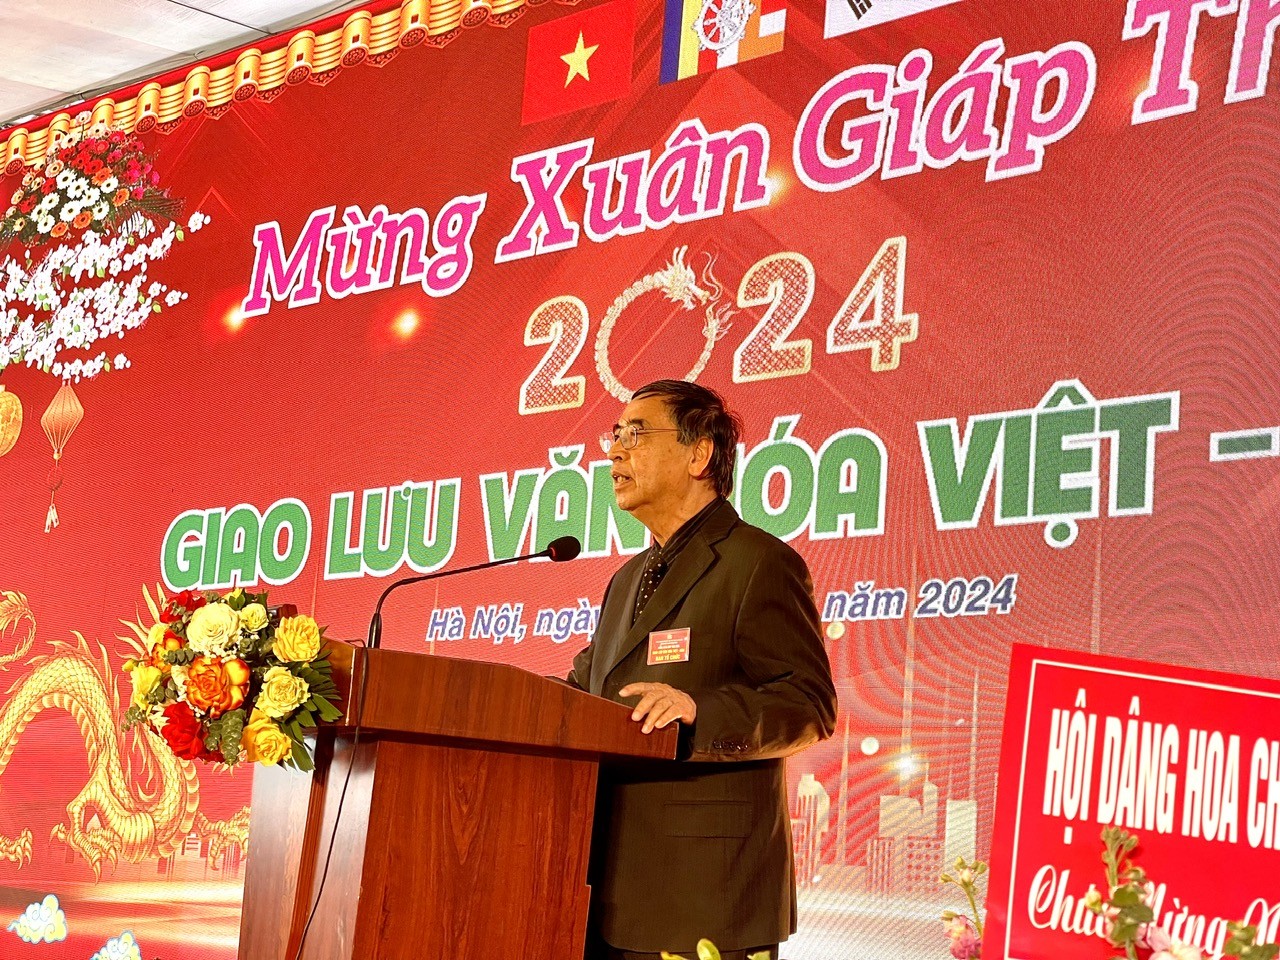 “Giao lưu văn hóa Việt - Hàn” mừng Xuân Giáp Thìn 2024